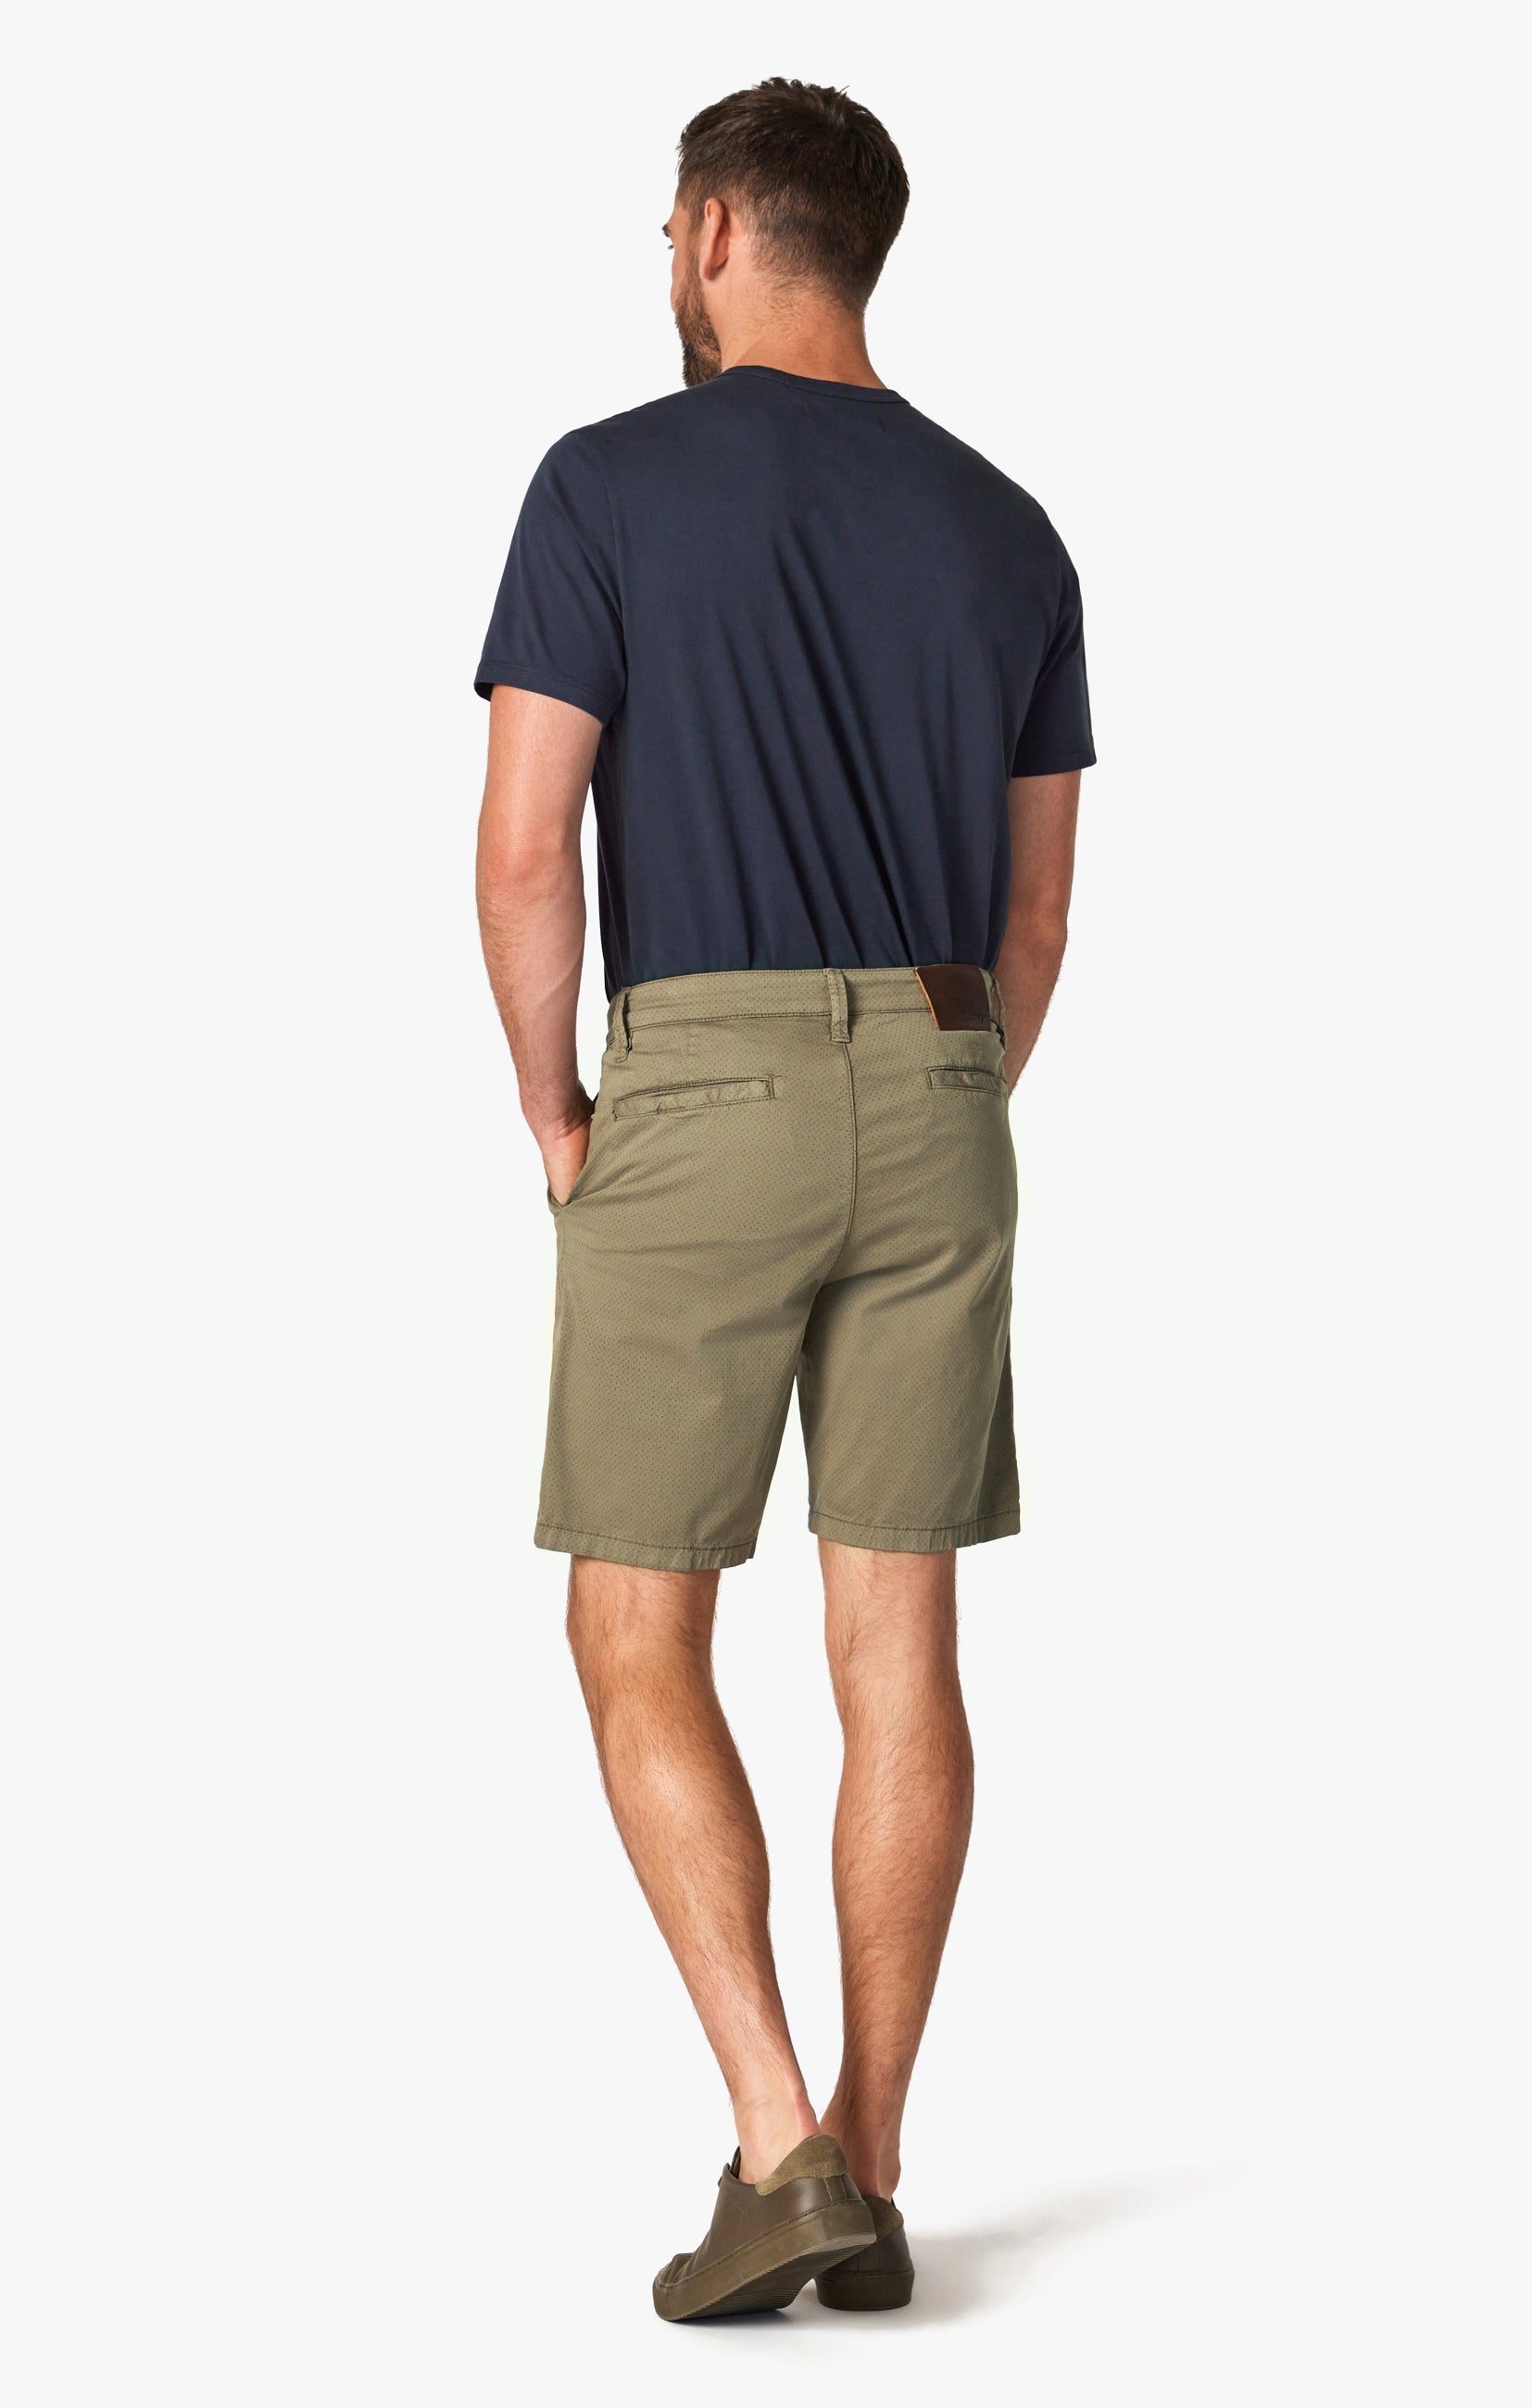 Arizona Slim Shorts in Dusty Olive Dot Image 4